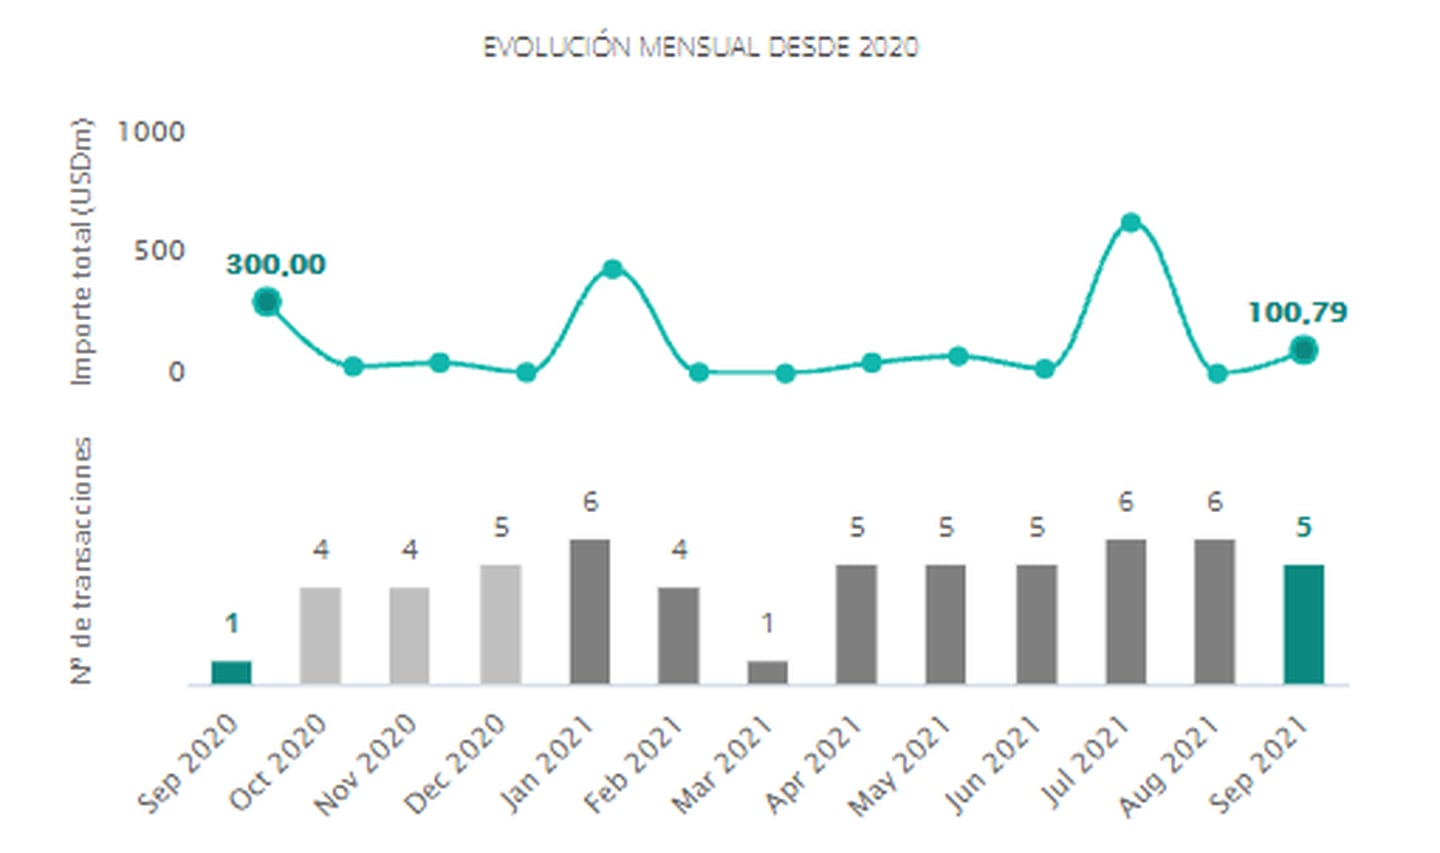 Transacciones en el mercado de fusiones y adquisiciones en el sector de tecnología en Colombia
desde septiembre de 2020 hasta septiembre de 2021. Fuente: Transactional Track Record.dfd